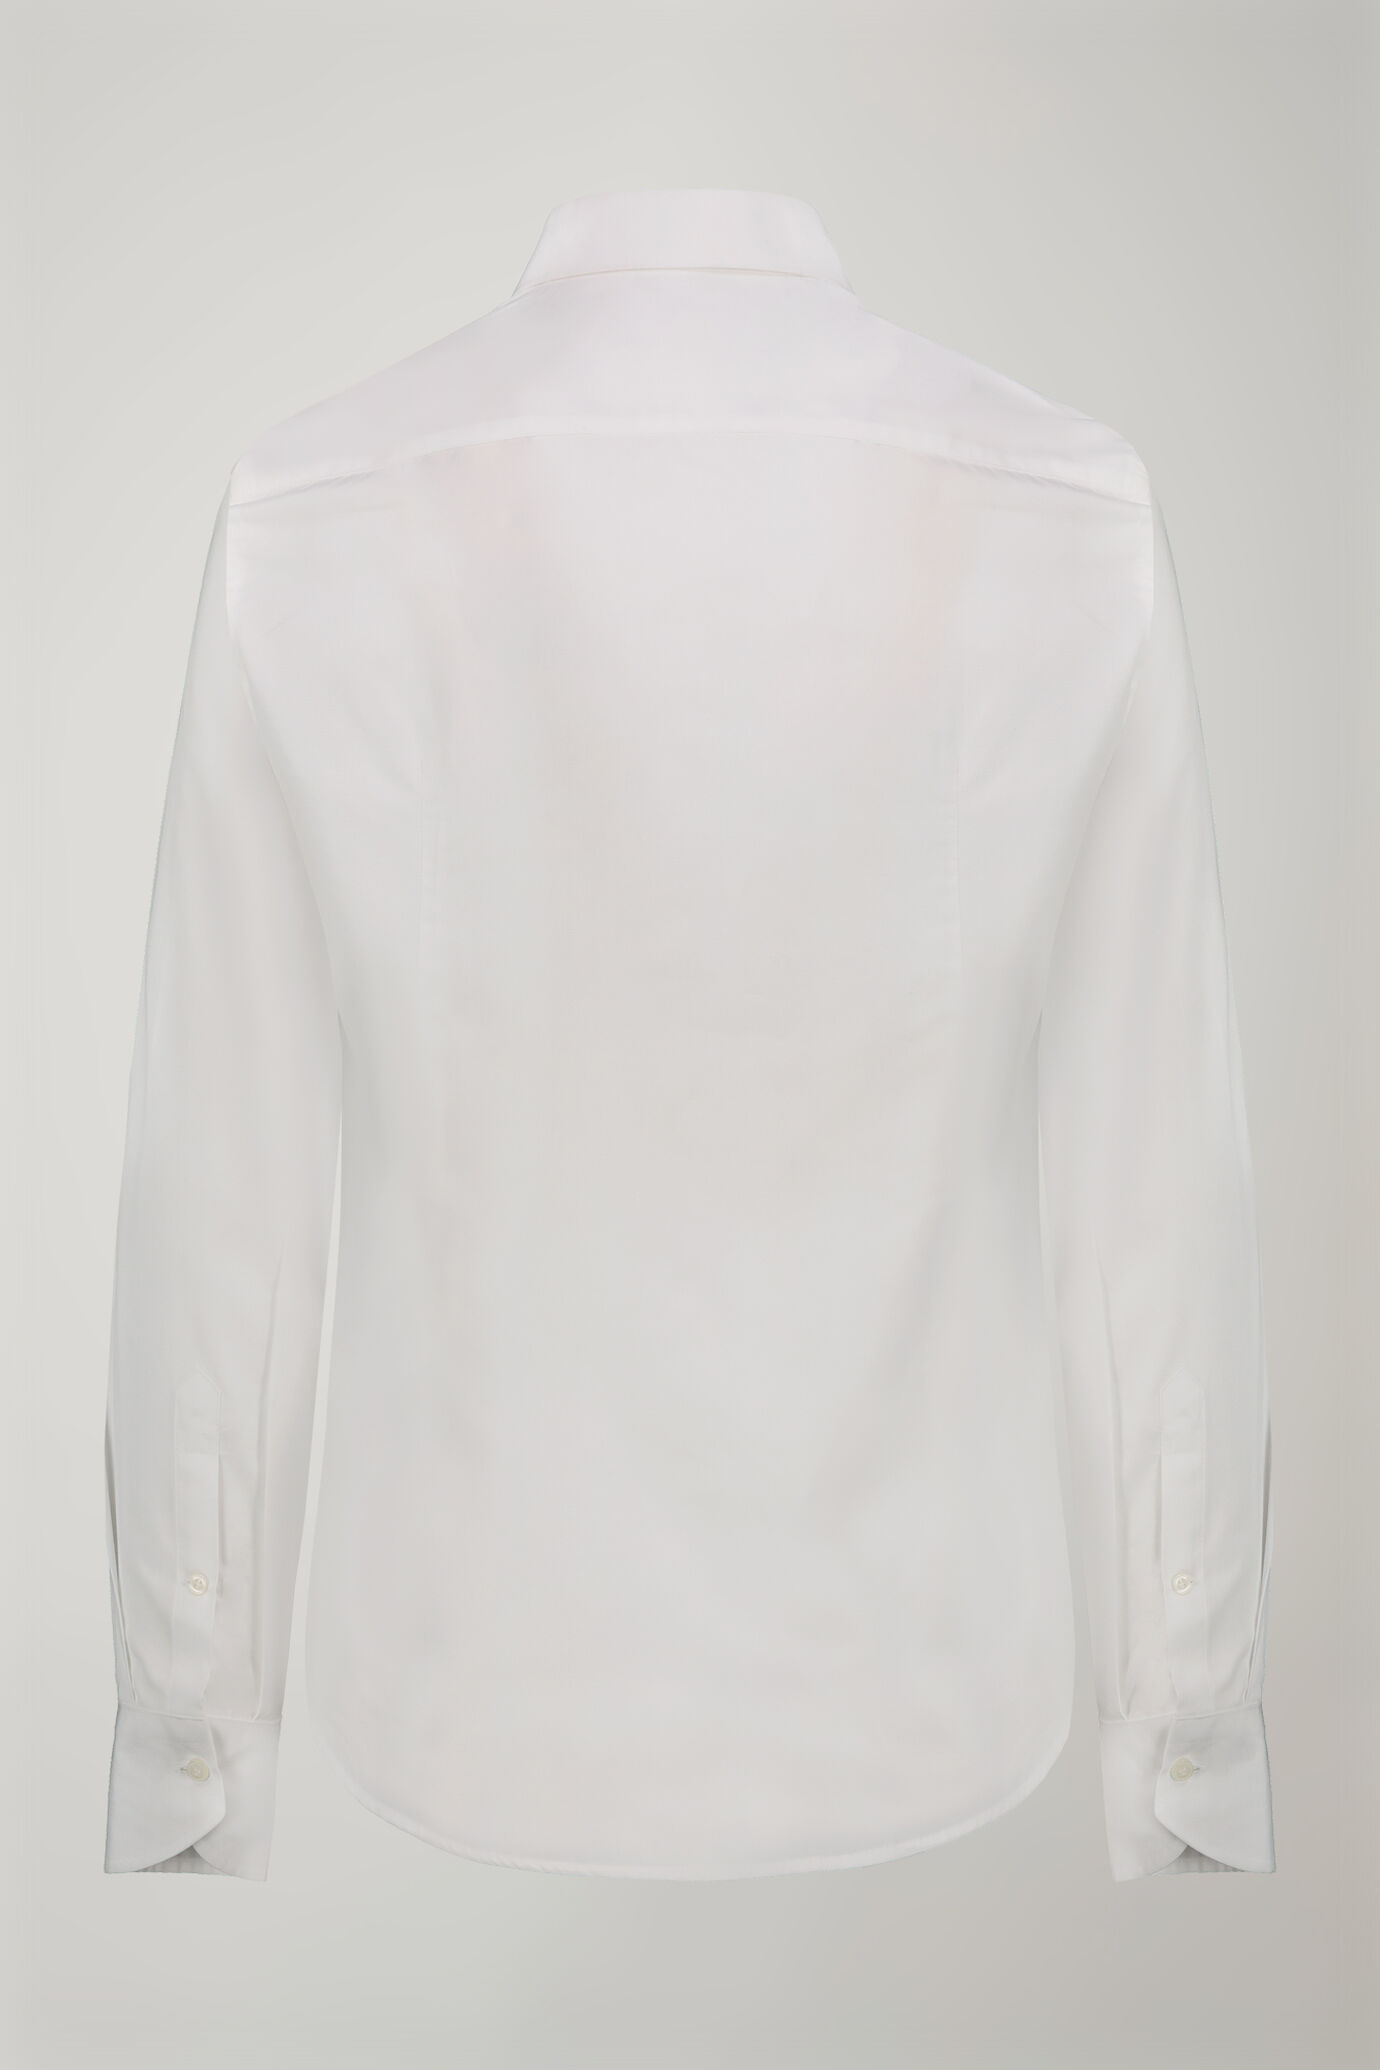 Camicia uomo collo classico 100% cotone tessuto fil-a-fil regular fit image number 5